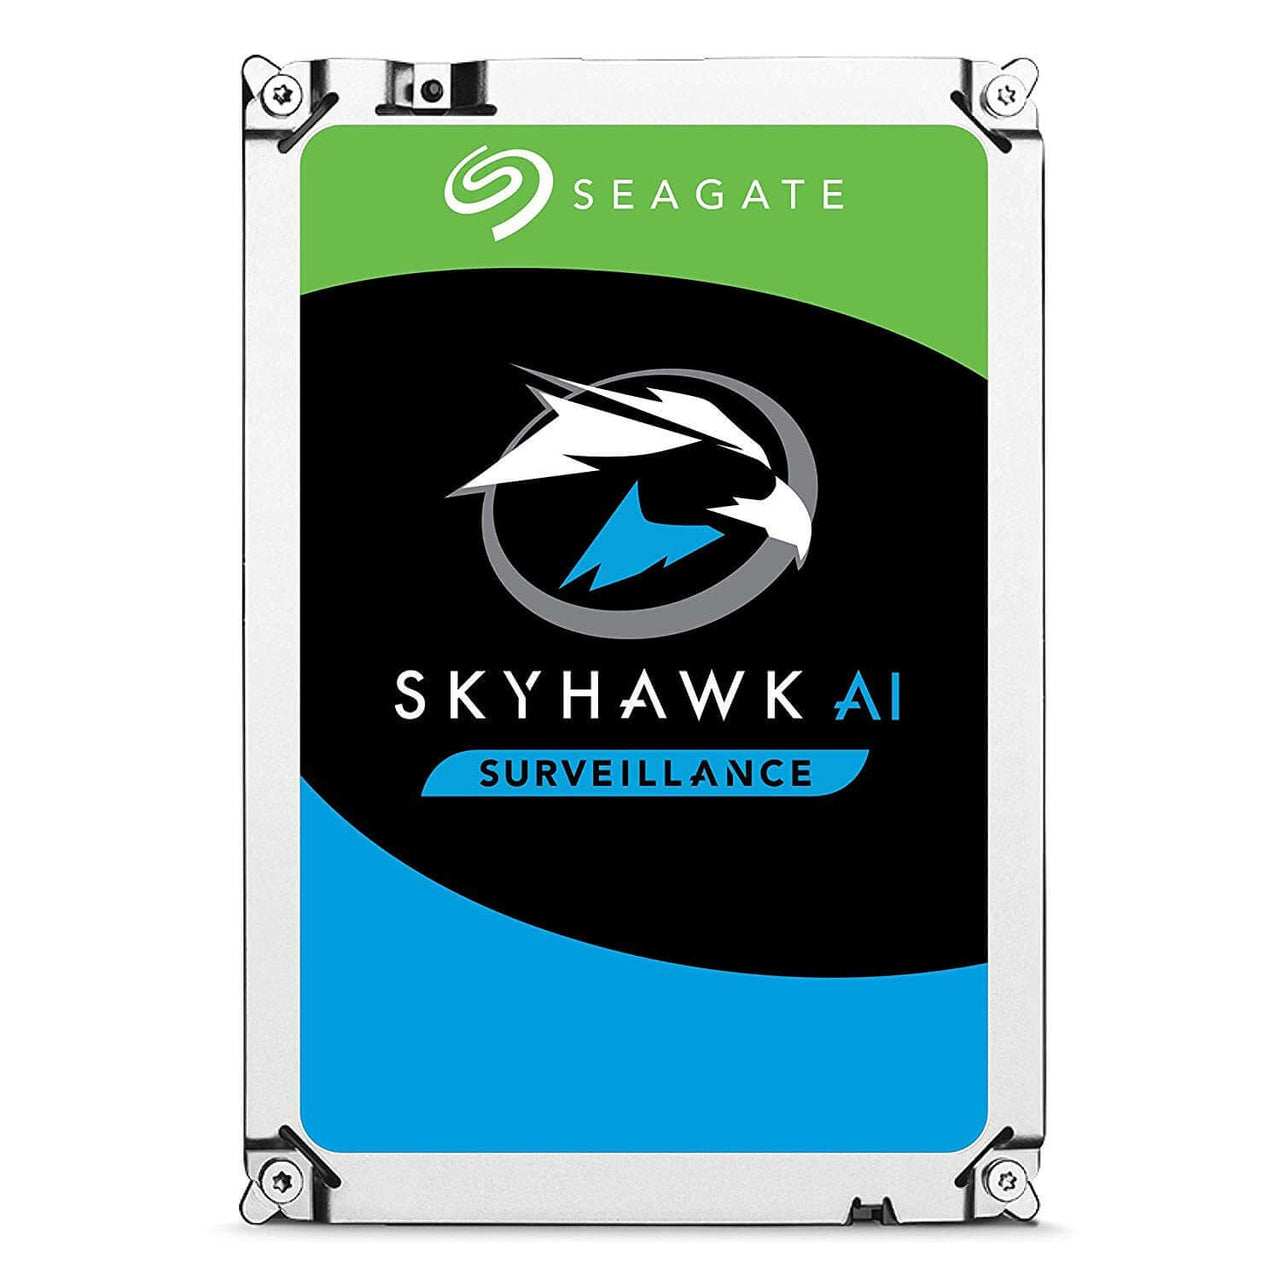 Seagate Skyhawk AI 8TB SATA Hard Drives Dubai UAE